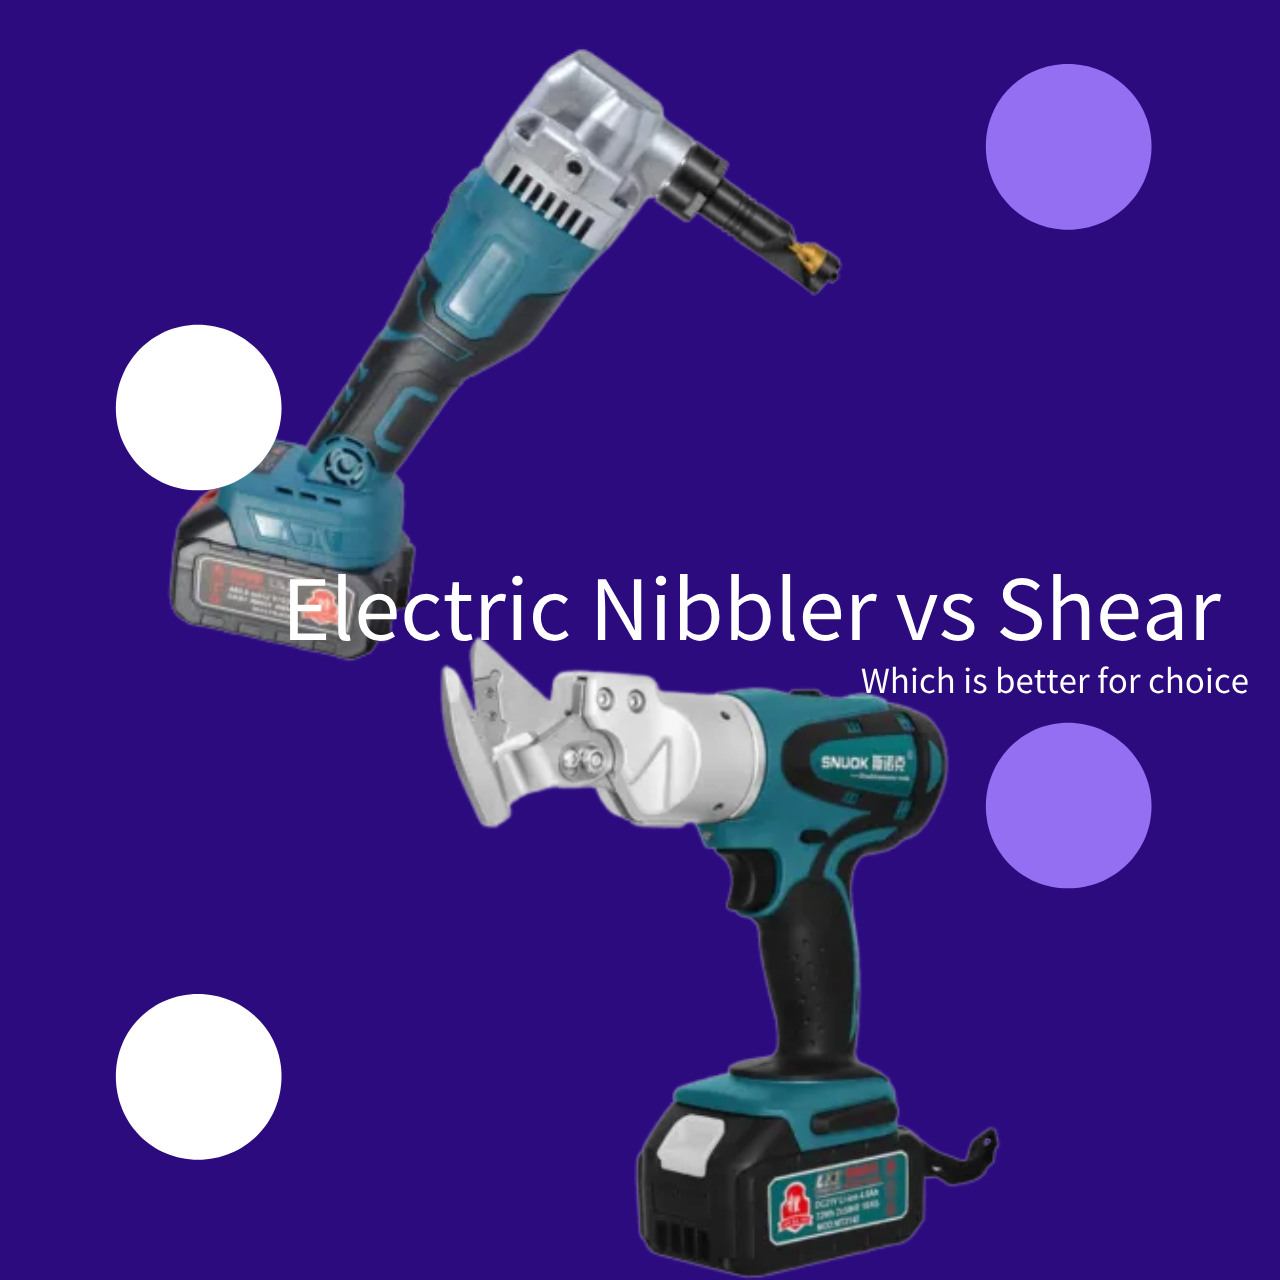 Electric Nibbler vs Shear